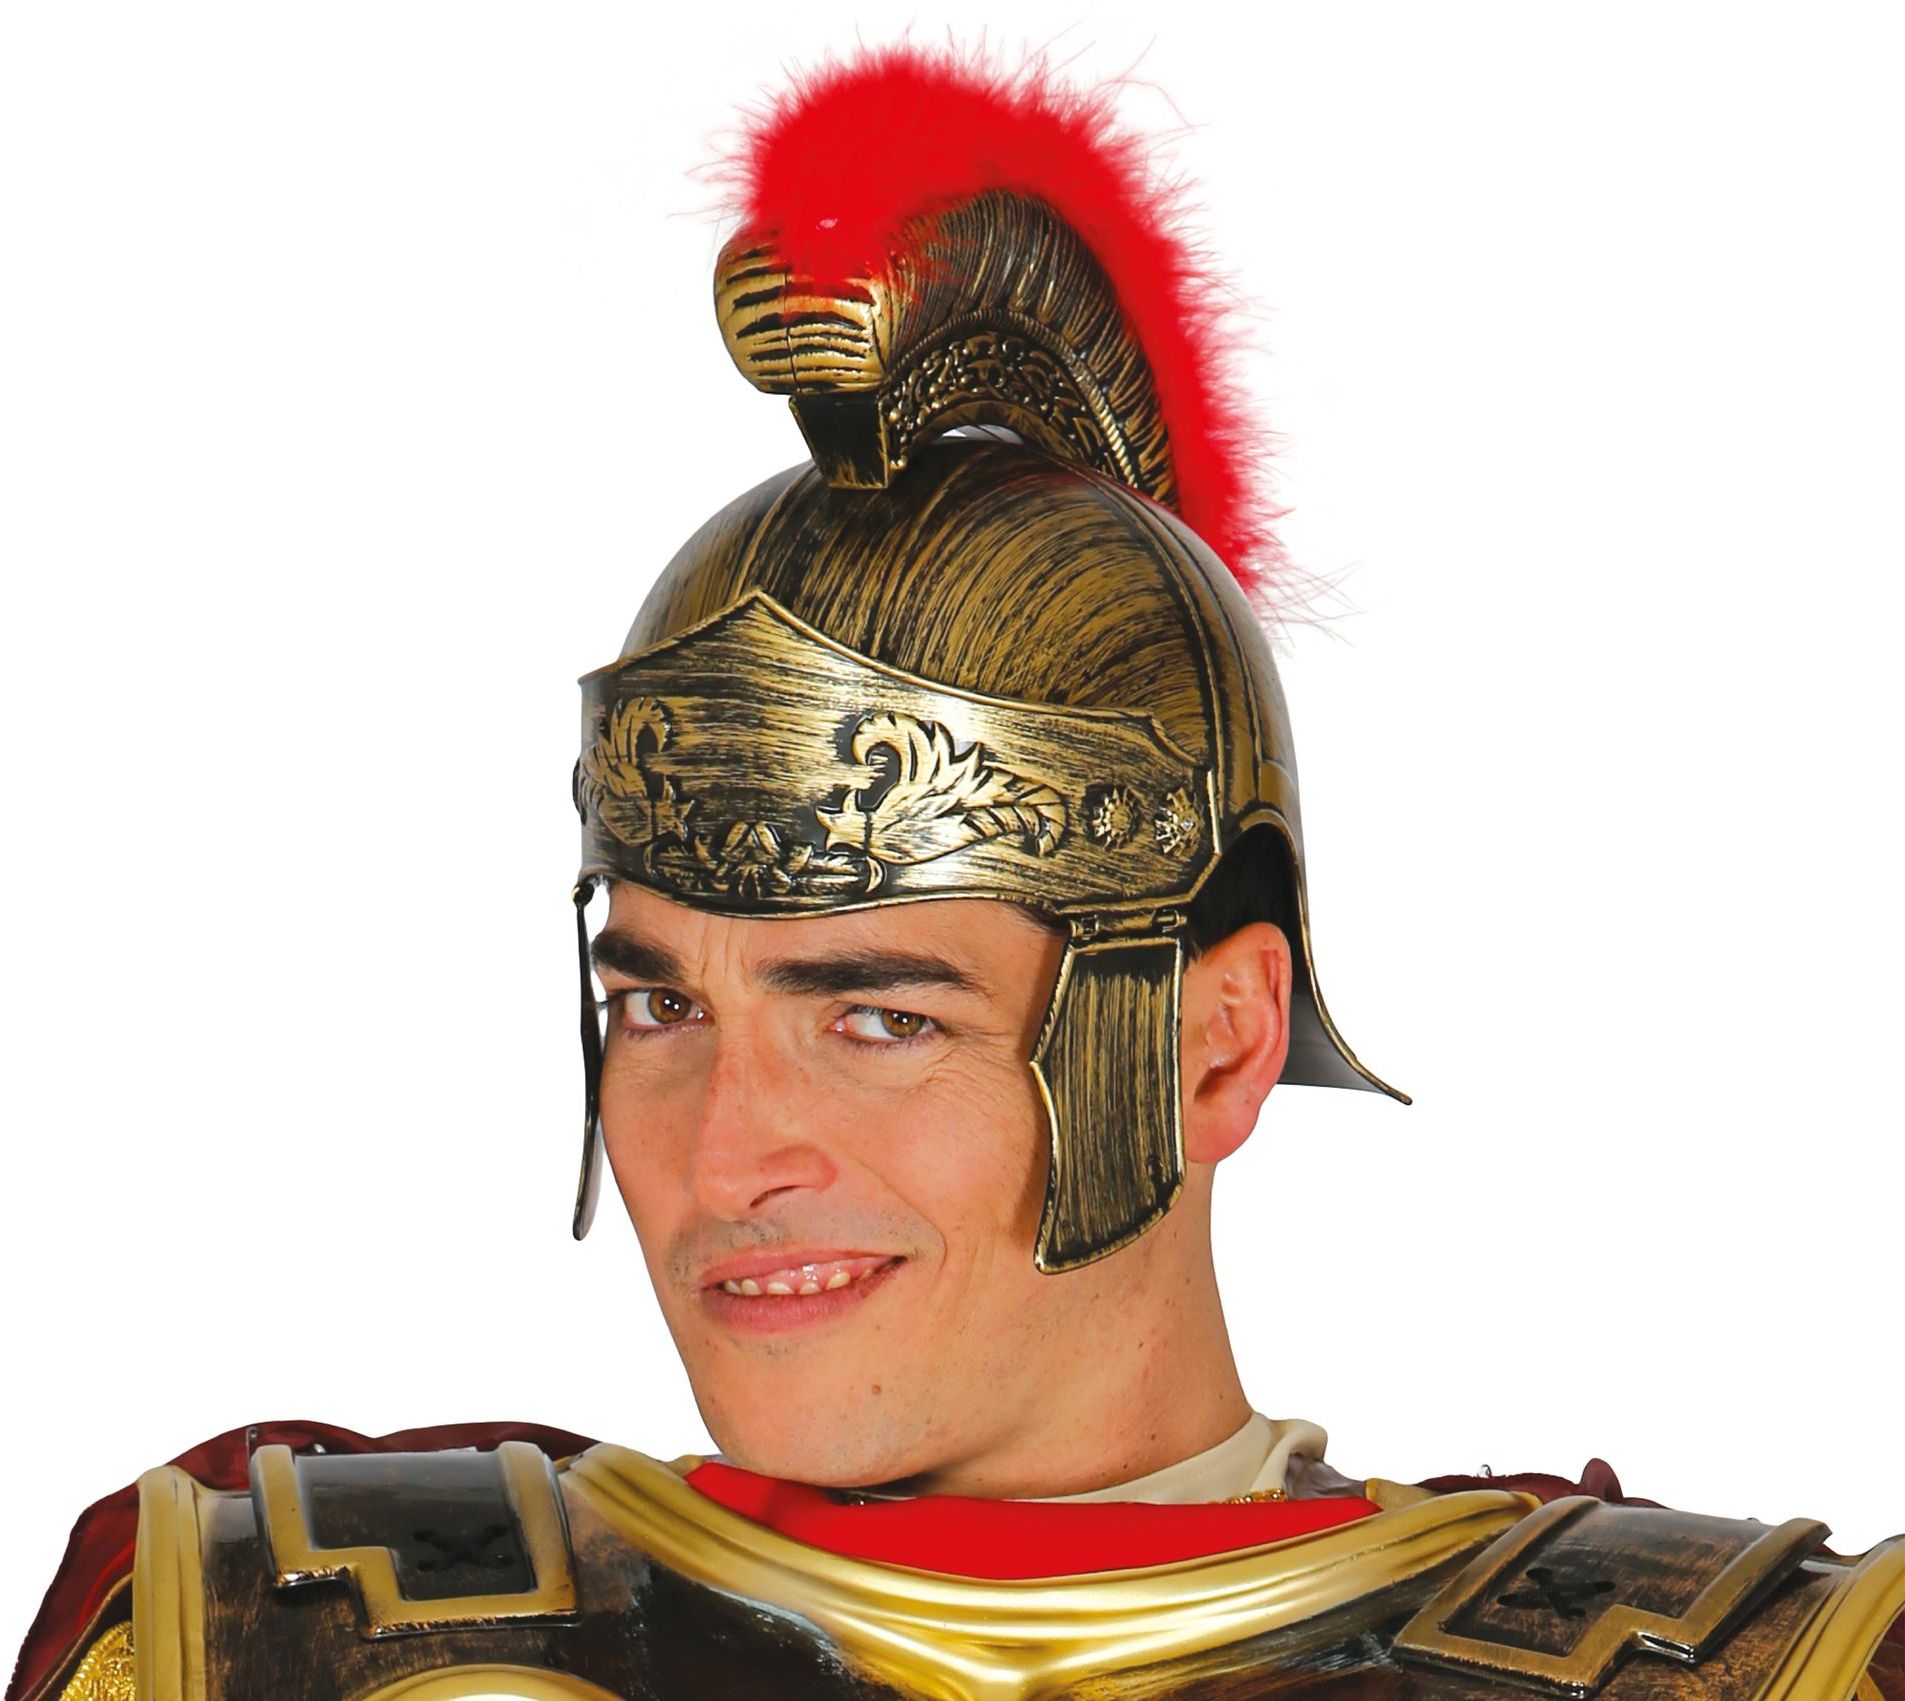 Romeinse soldatenhelm goud